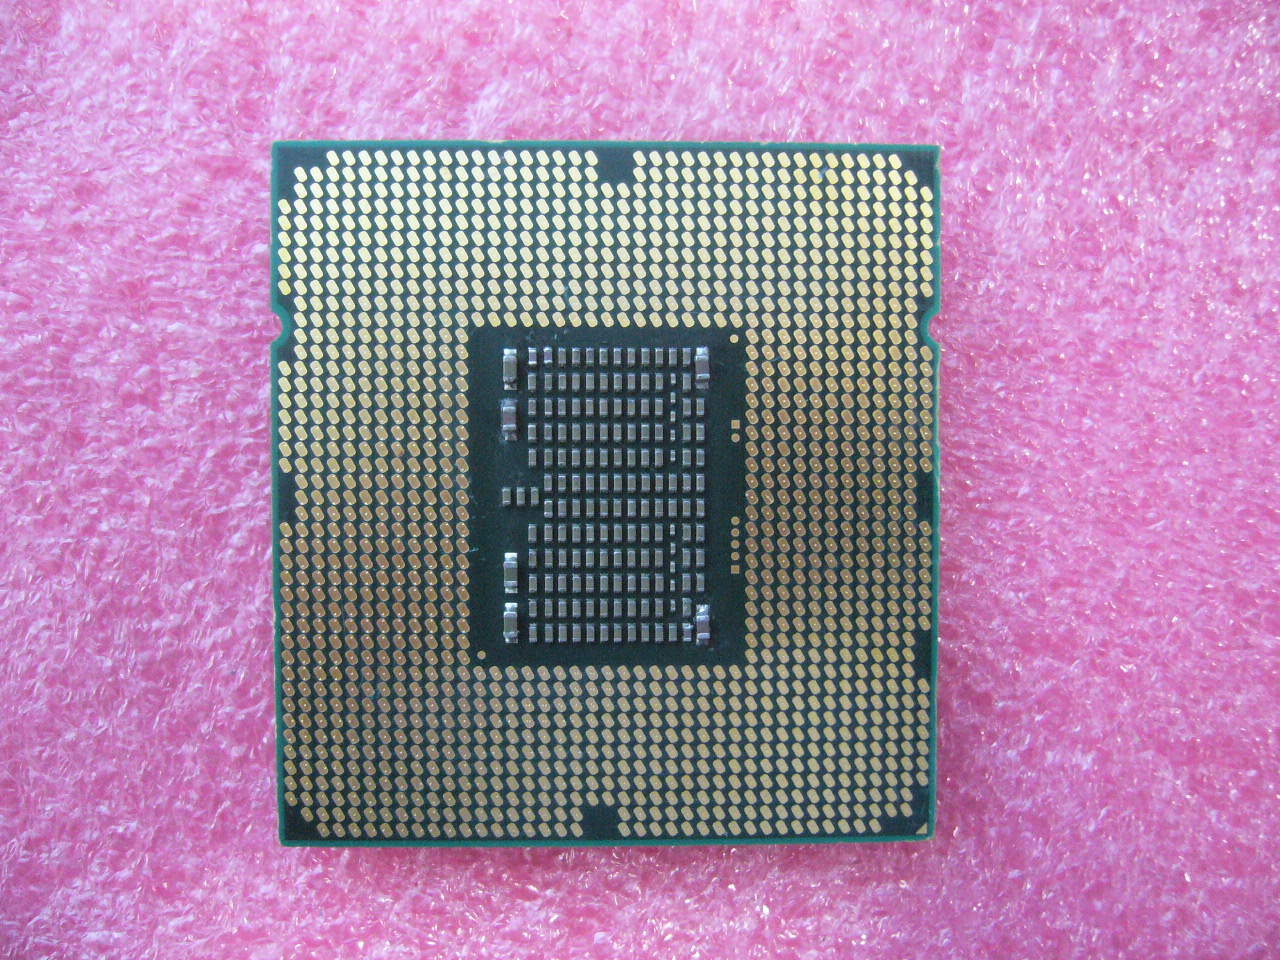 QTY 1x INTEL Quad-Cores Xeon CPU X5672 3.2GHZ/12MB LGA1366 SLBYK - zum Schließen ins Bild klicken